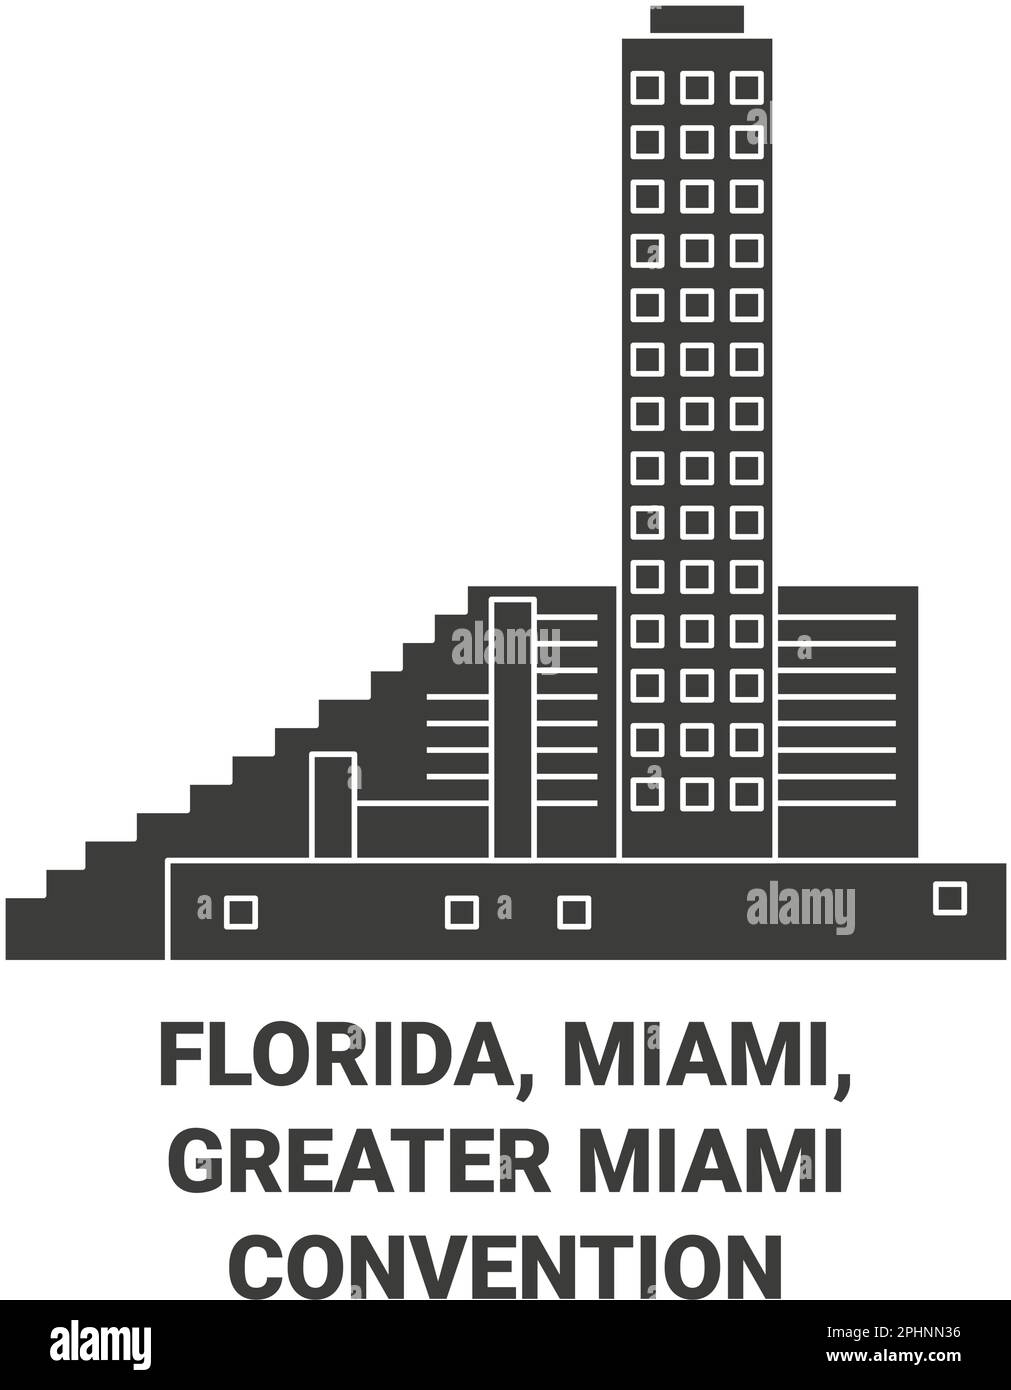 États-Unis, Floride, Miami, Greater Miami Convention & Visitors Office illustration vectorielle du voyage Illustration de Vecteur